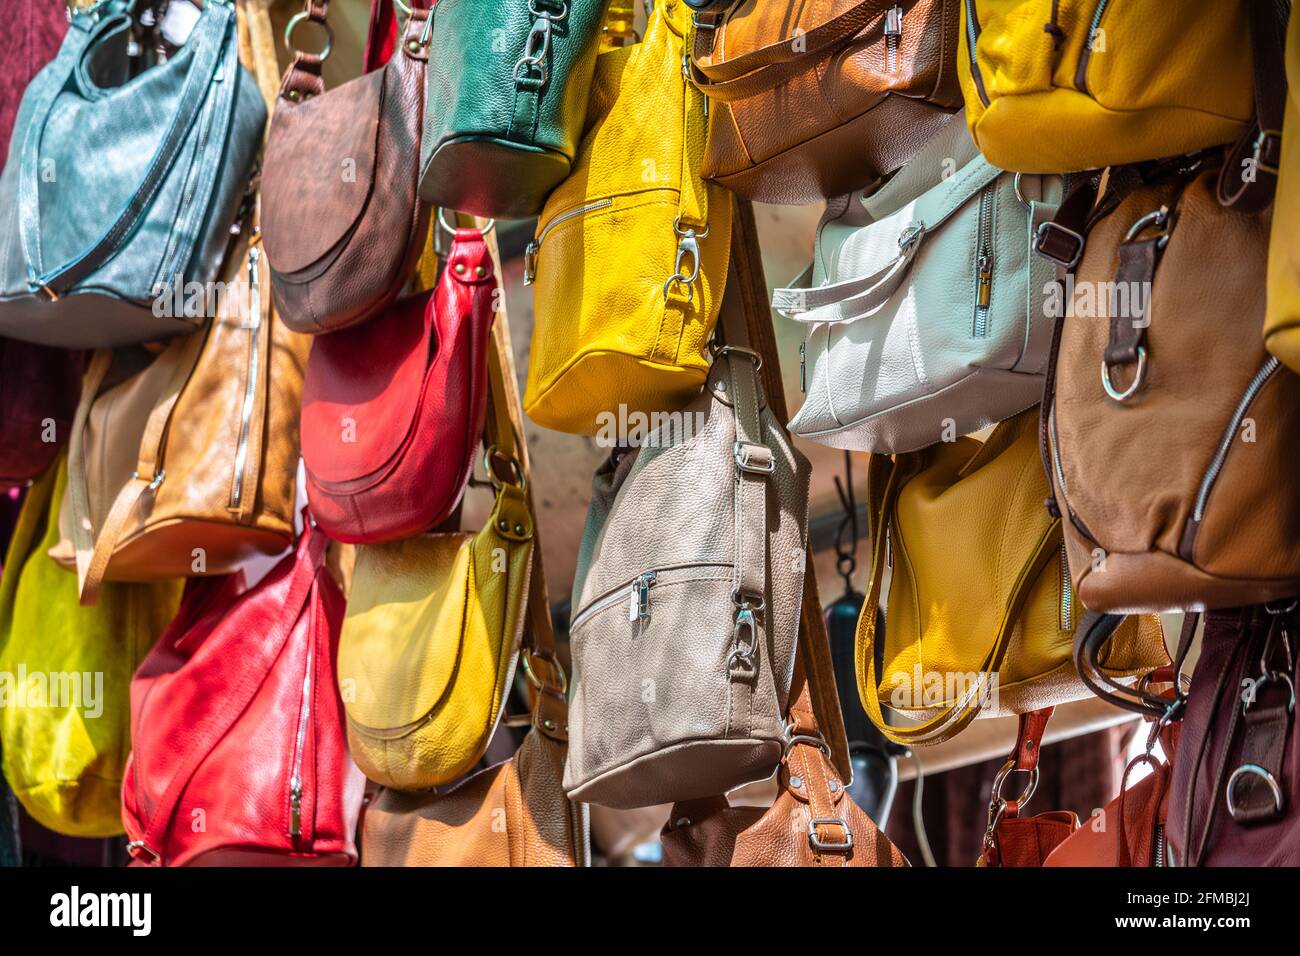 Viele Ledertaschen bunte lebendige Farben hängen auf dem Display in Einkaufsstraßen Markt in Florenz, Florenz, Toskana, Italien Stockfoto